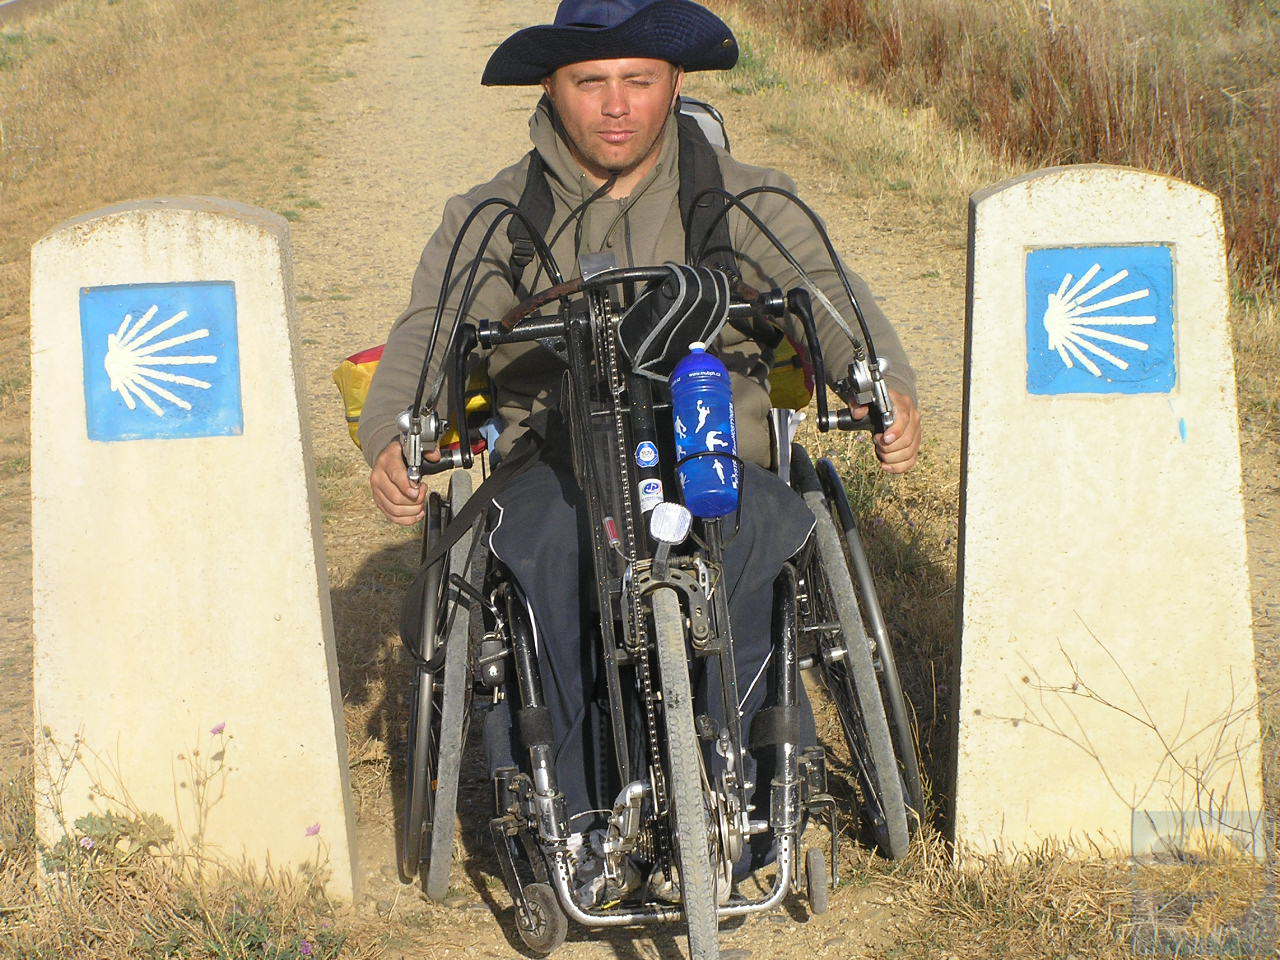 camino de santiago for wheelchair users